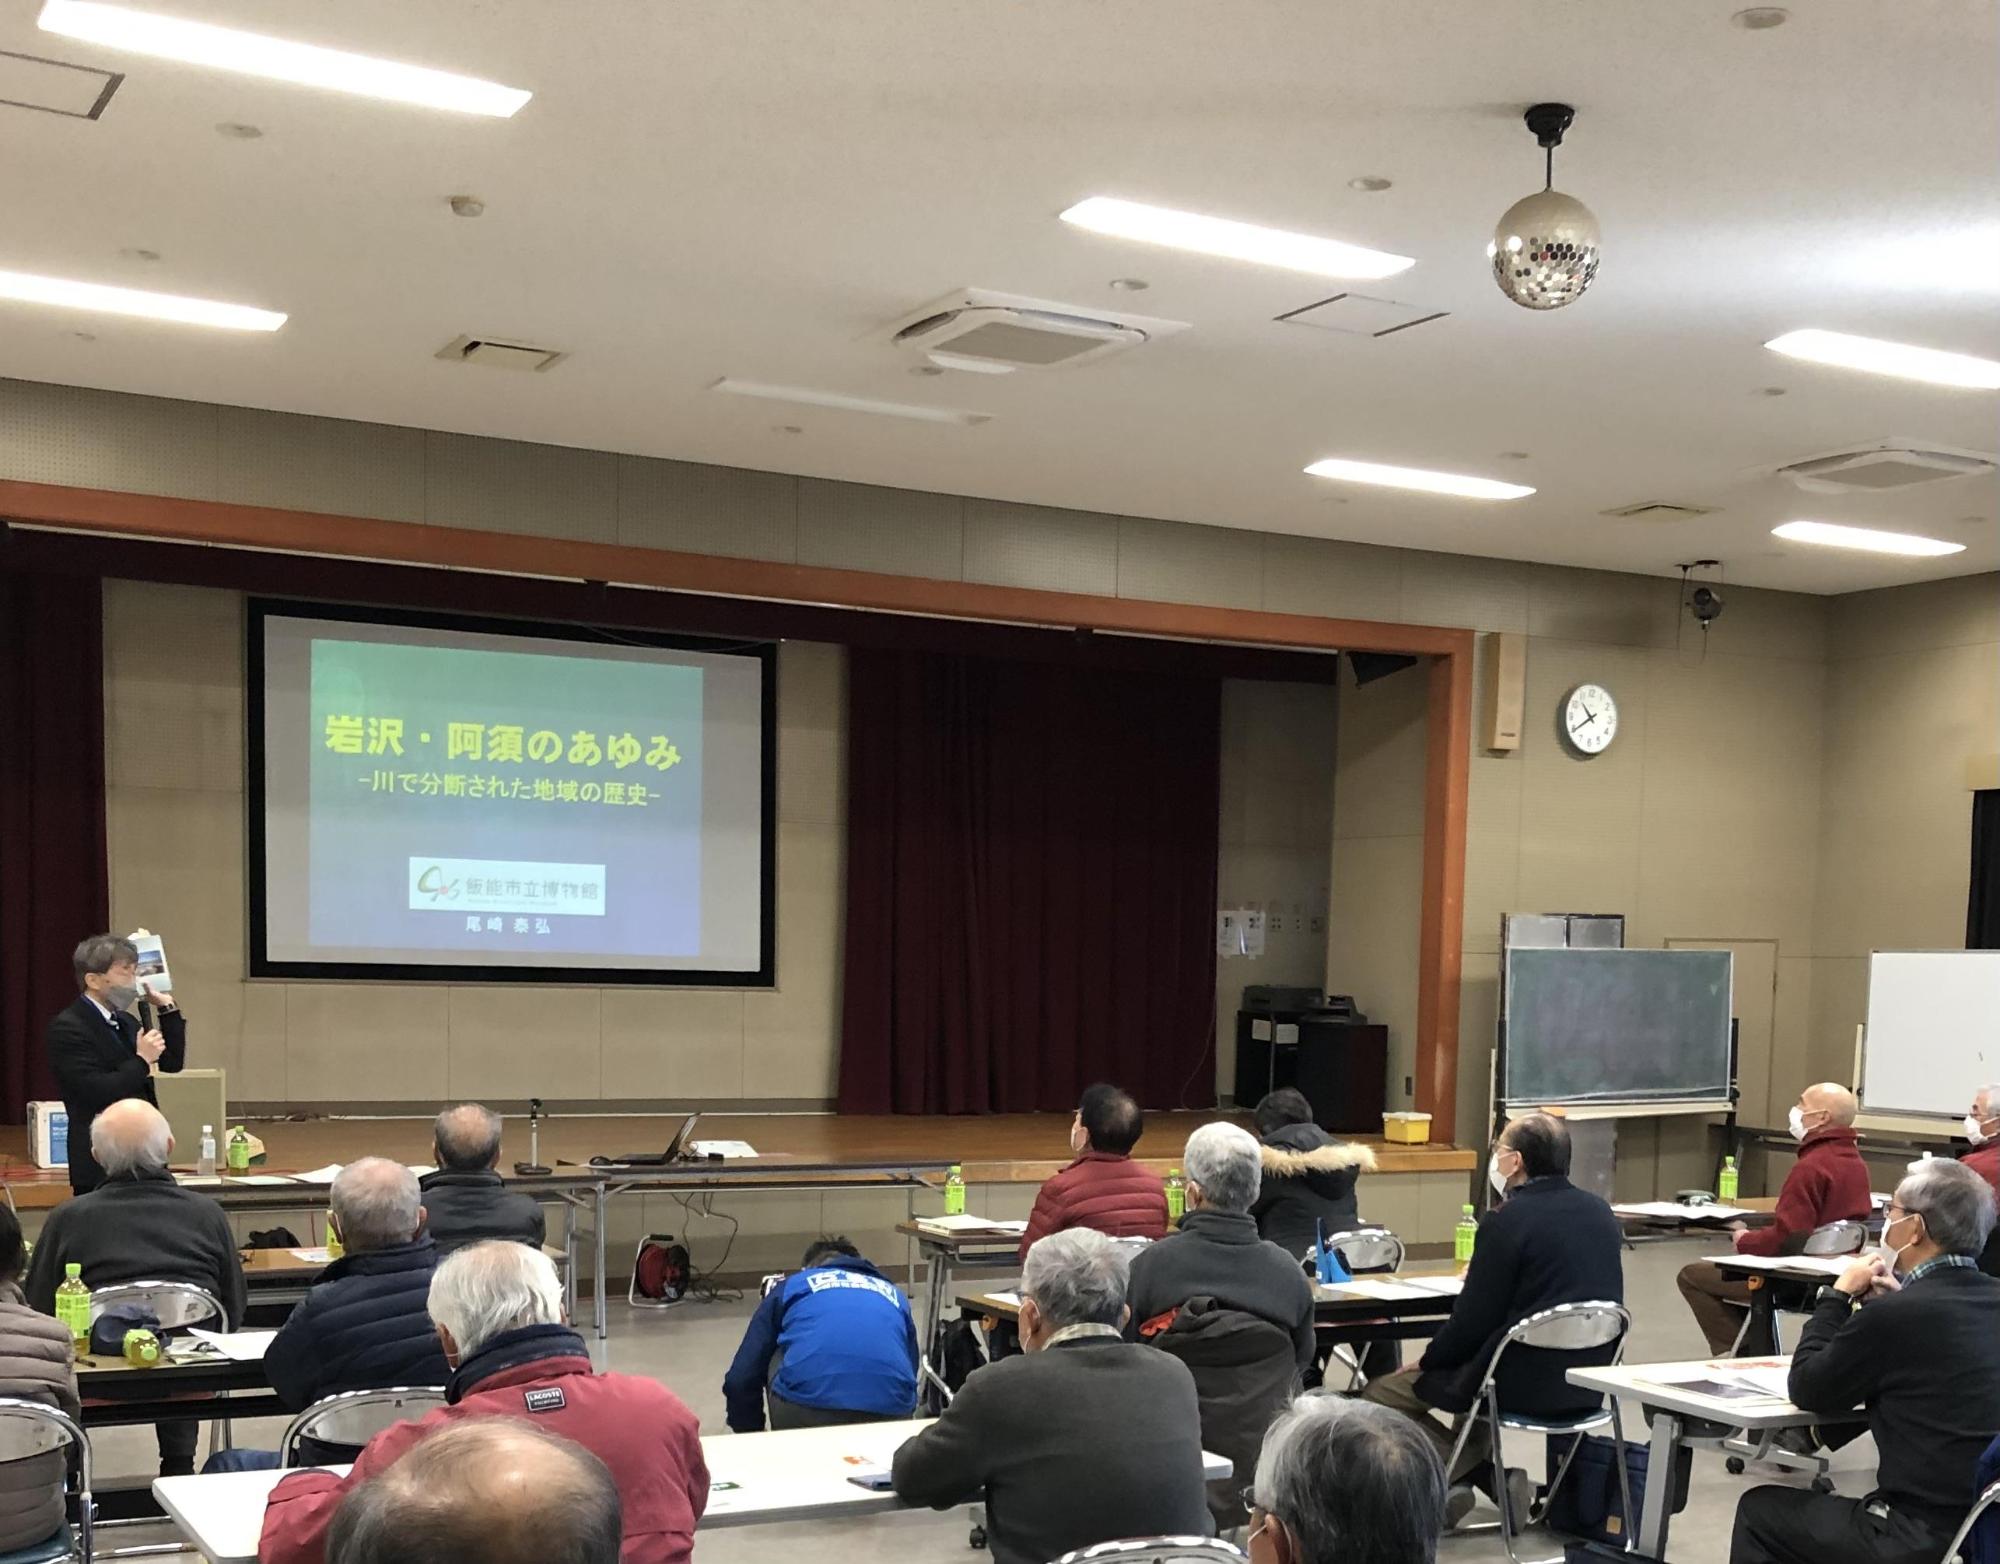 講座参加者に岩沢と阿須の歴史についてスクリーンで説明をしている尾崎館長の写真